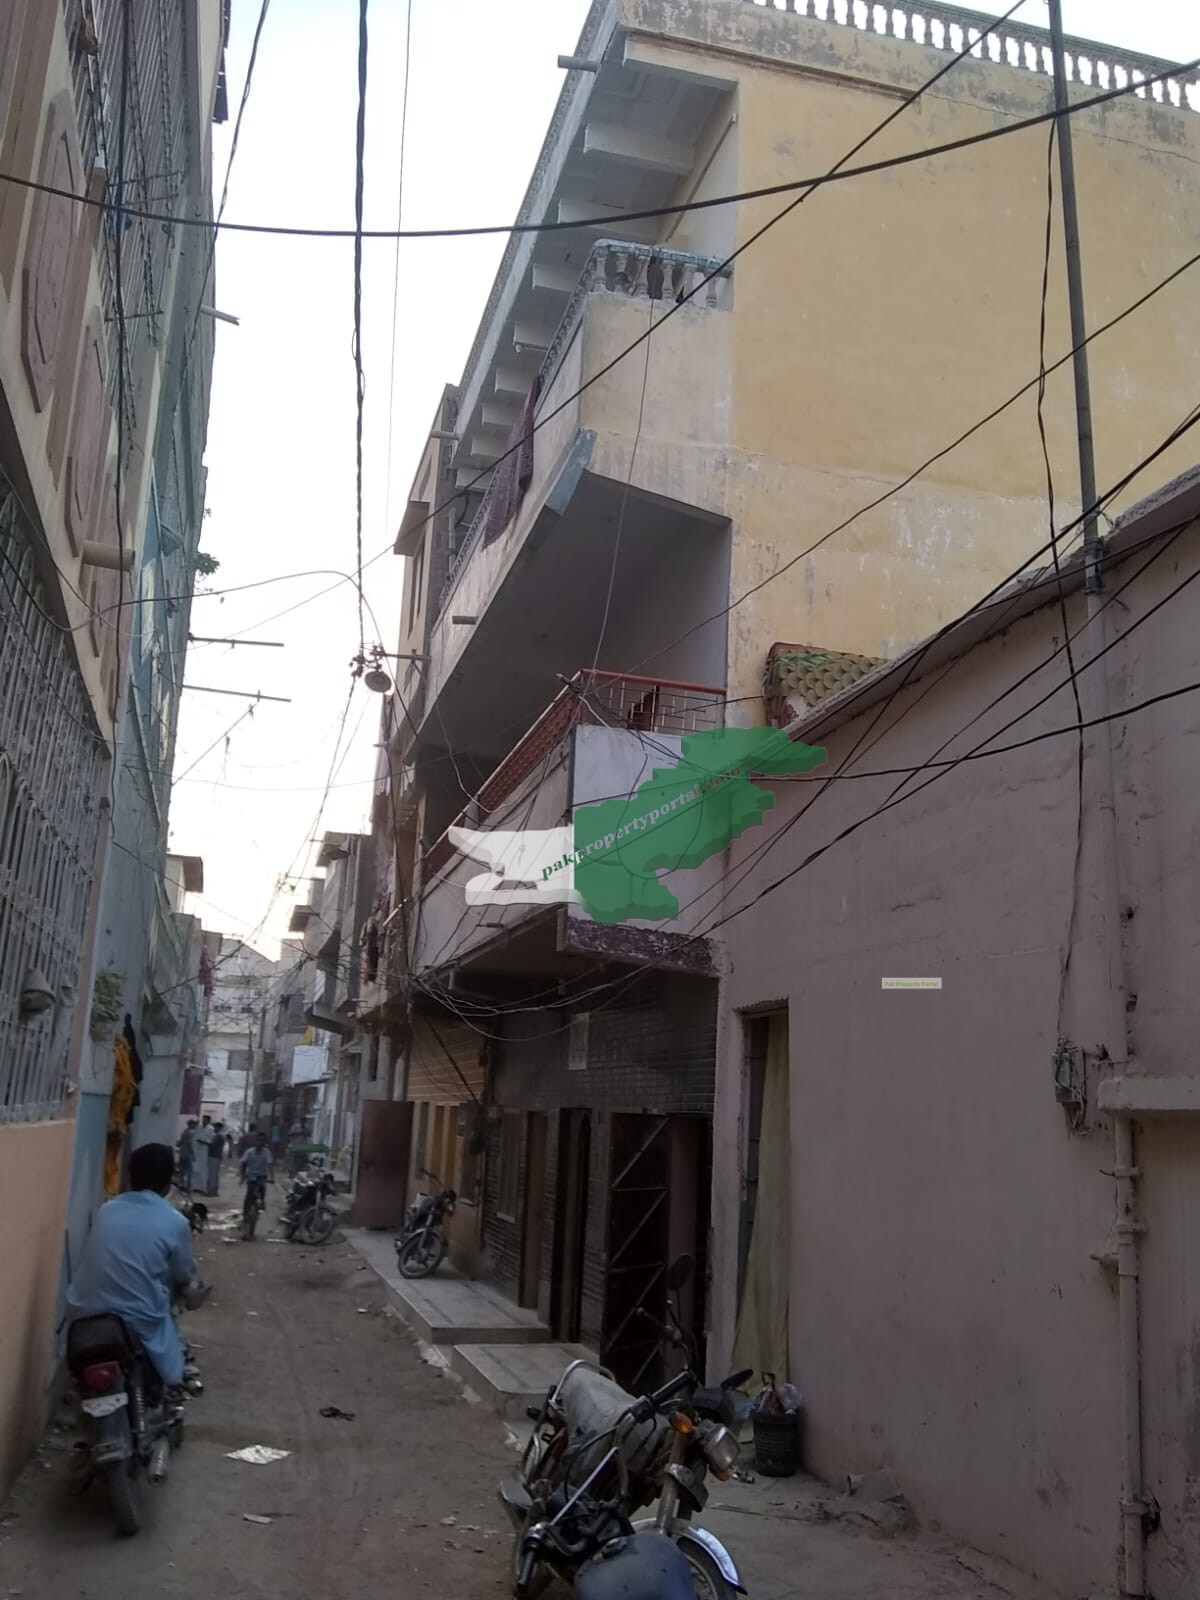 House for sale in Malir Gosiya Market Karachi